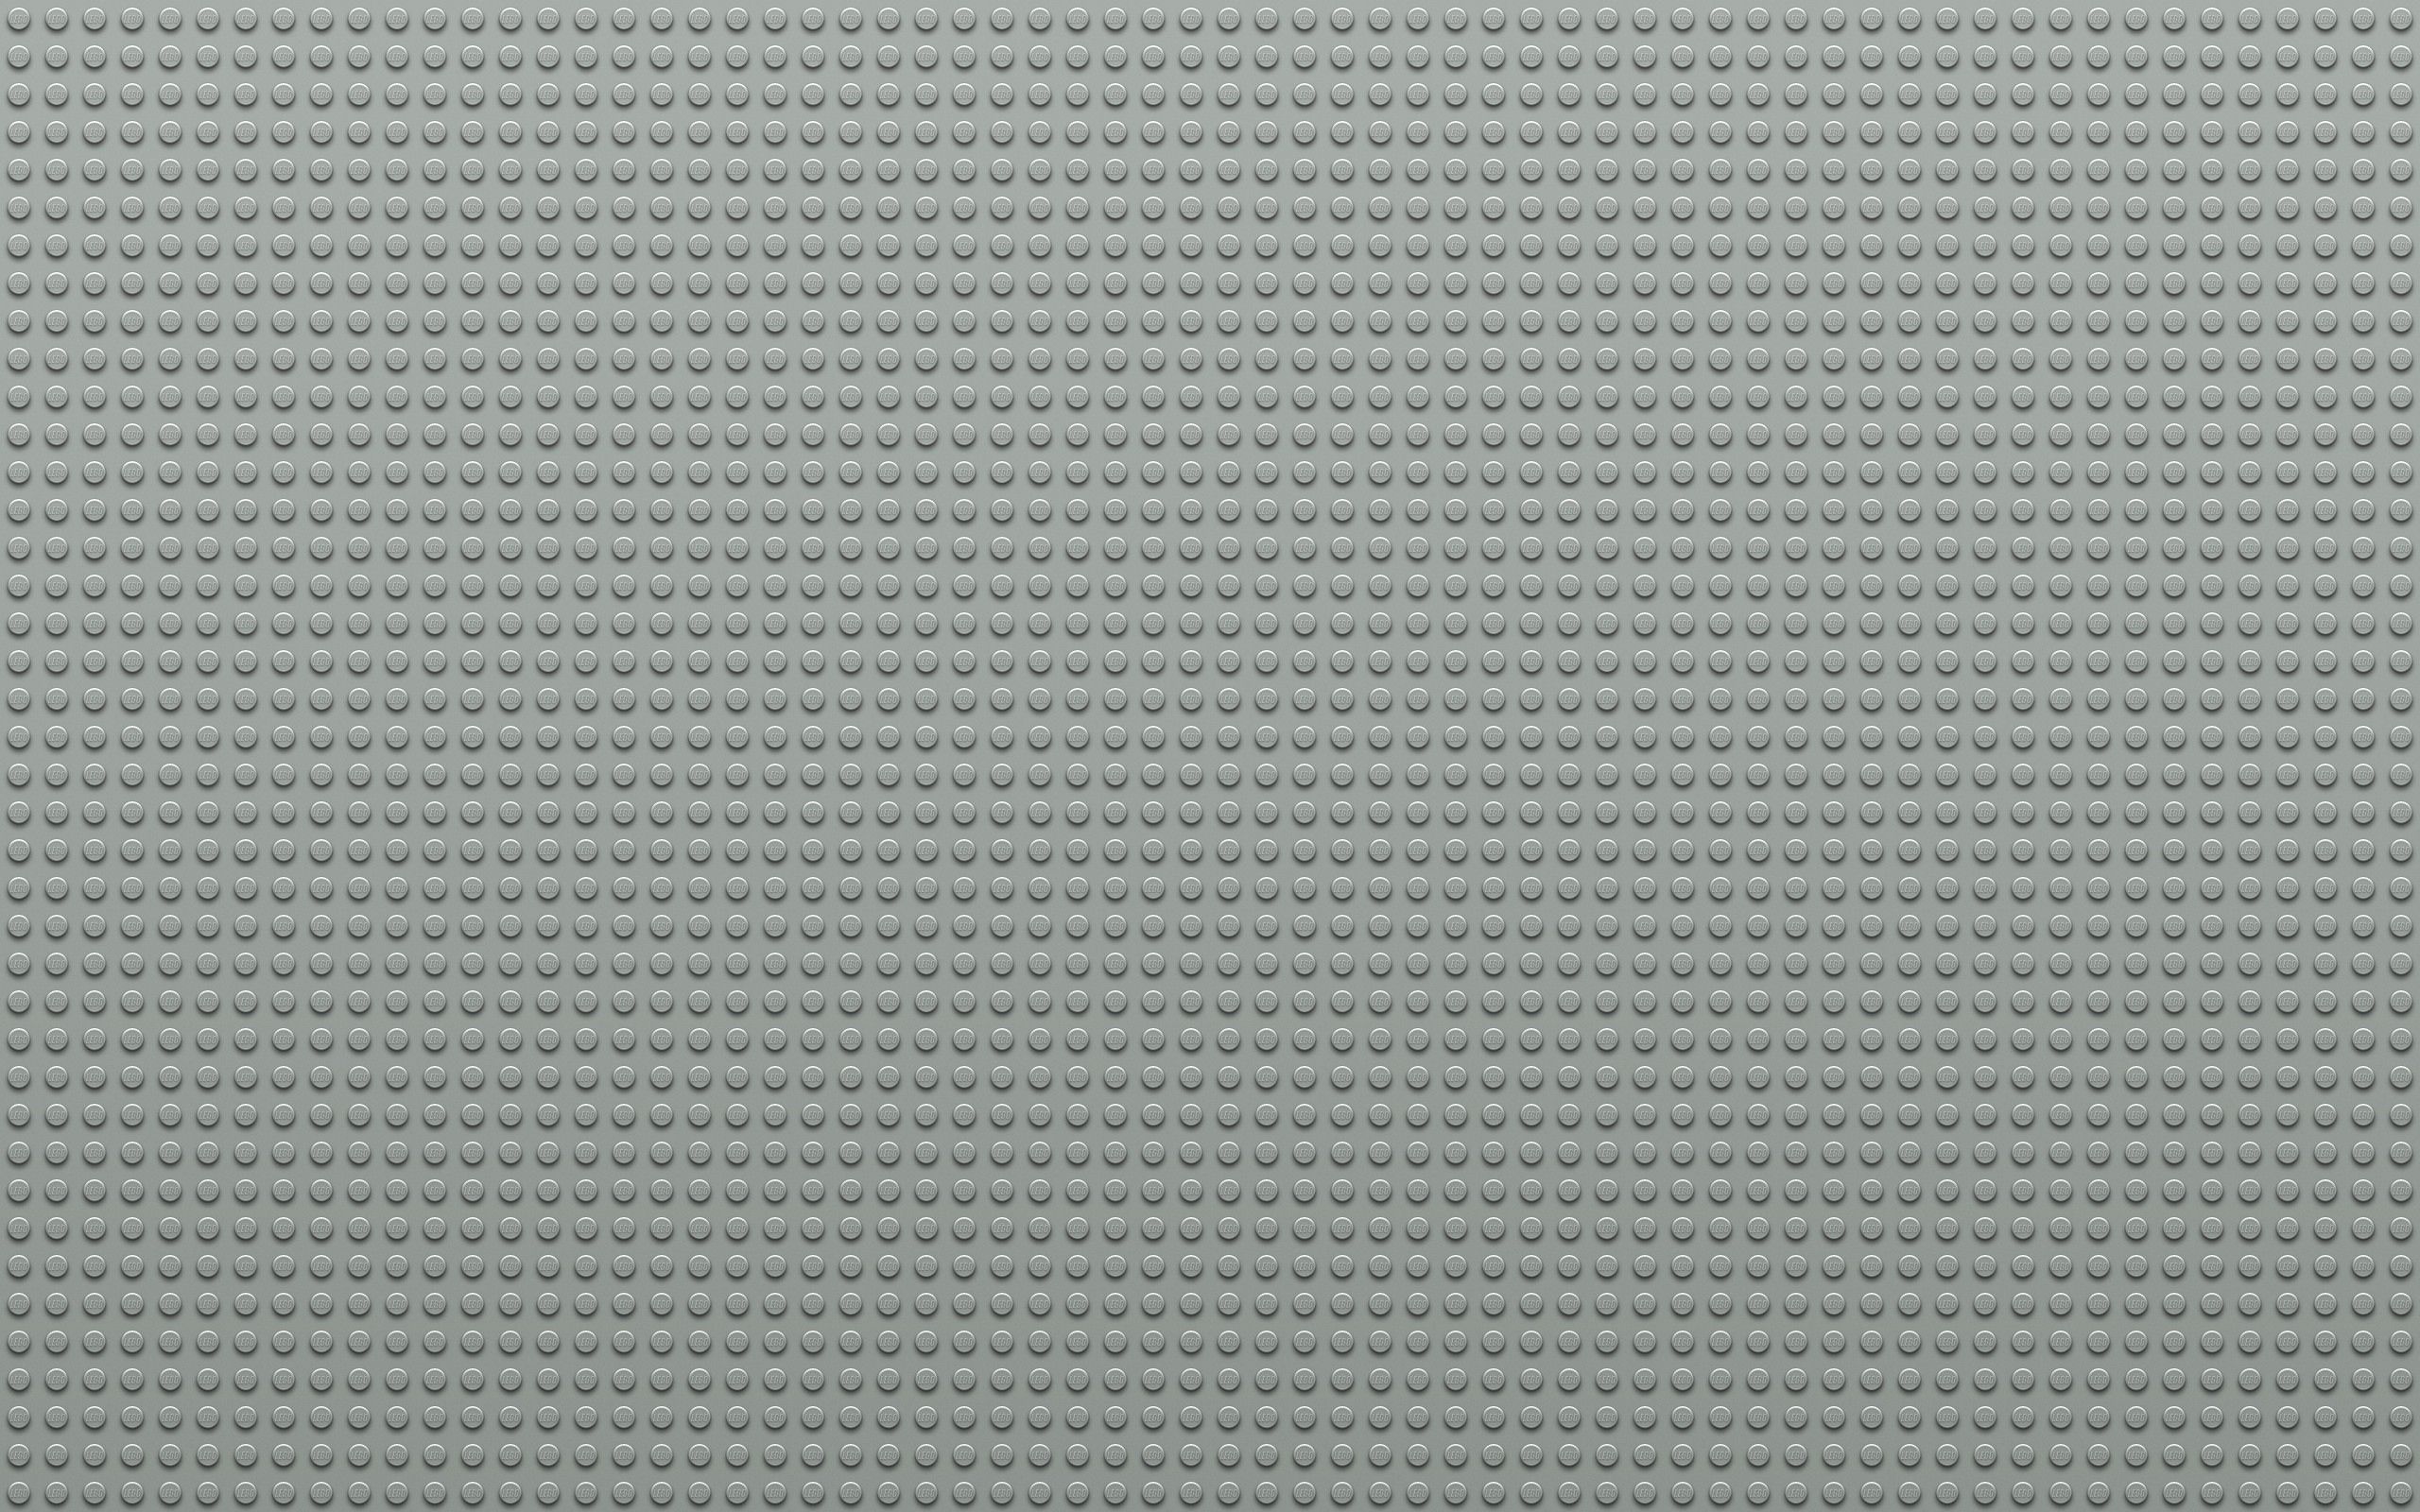 56148 Обои и Лего (Lego) картинки на рабочий стол. Скачать точки, светло серый, круги, текстуры заставки на ПК бесплатно